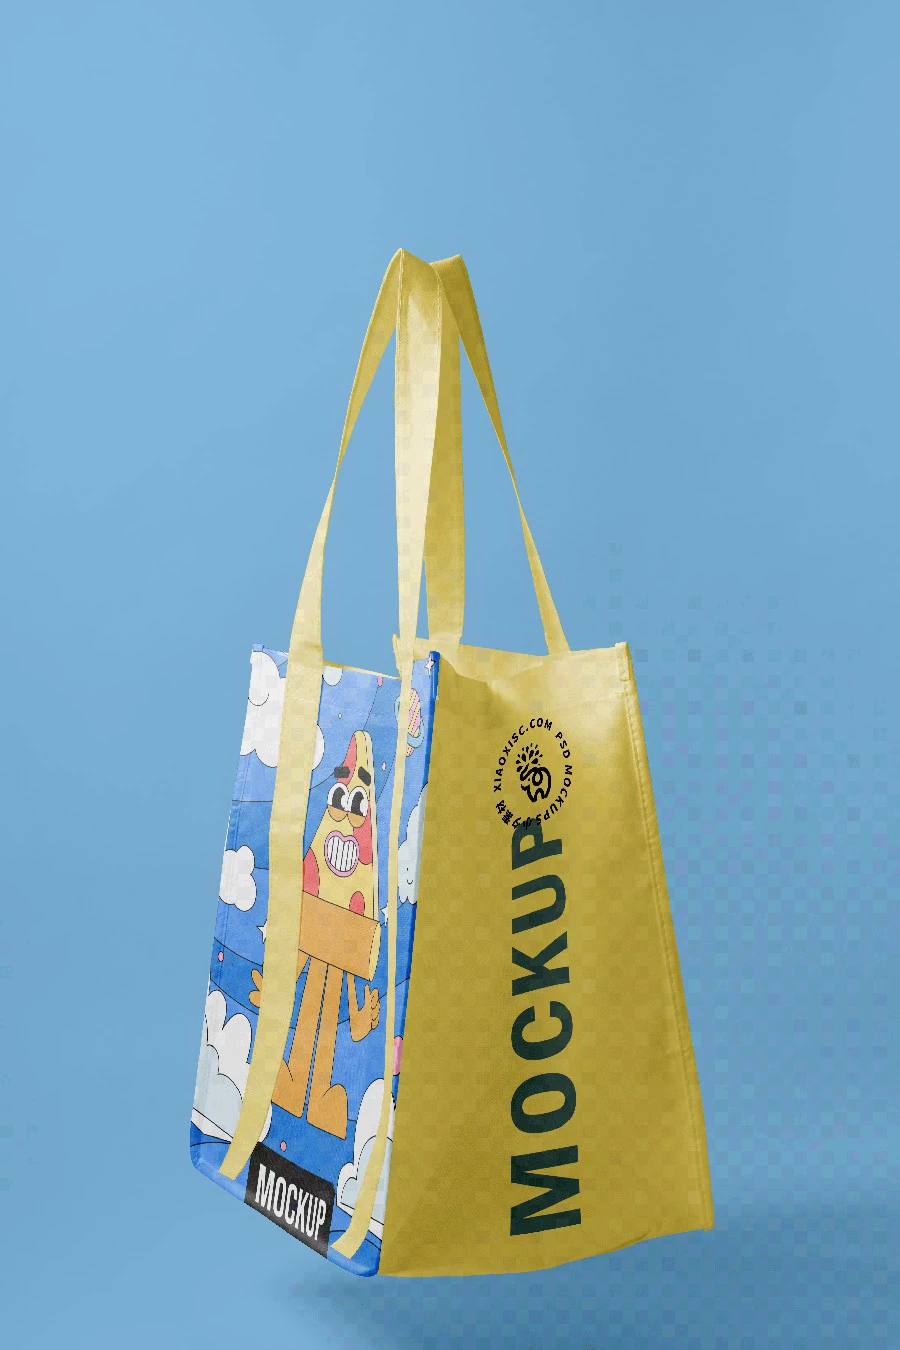 品牌环保塑料手提袋编织袋购物袋vi多角度展示智能样机PSD素材【019】